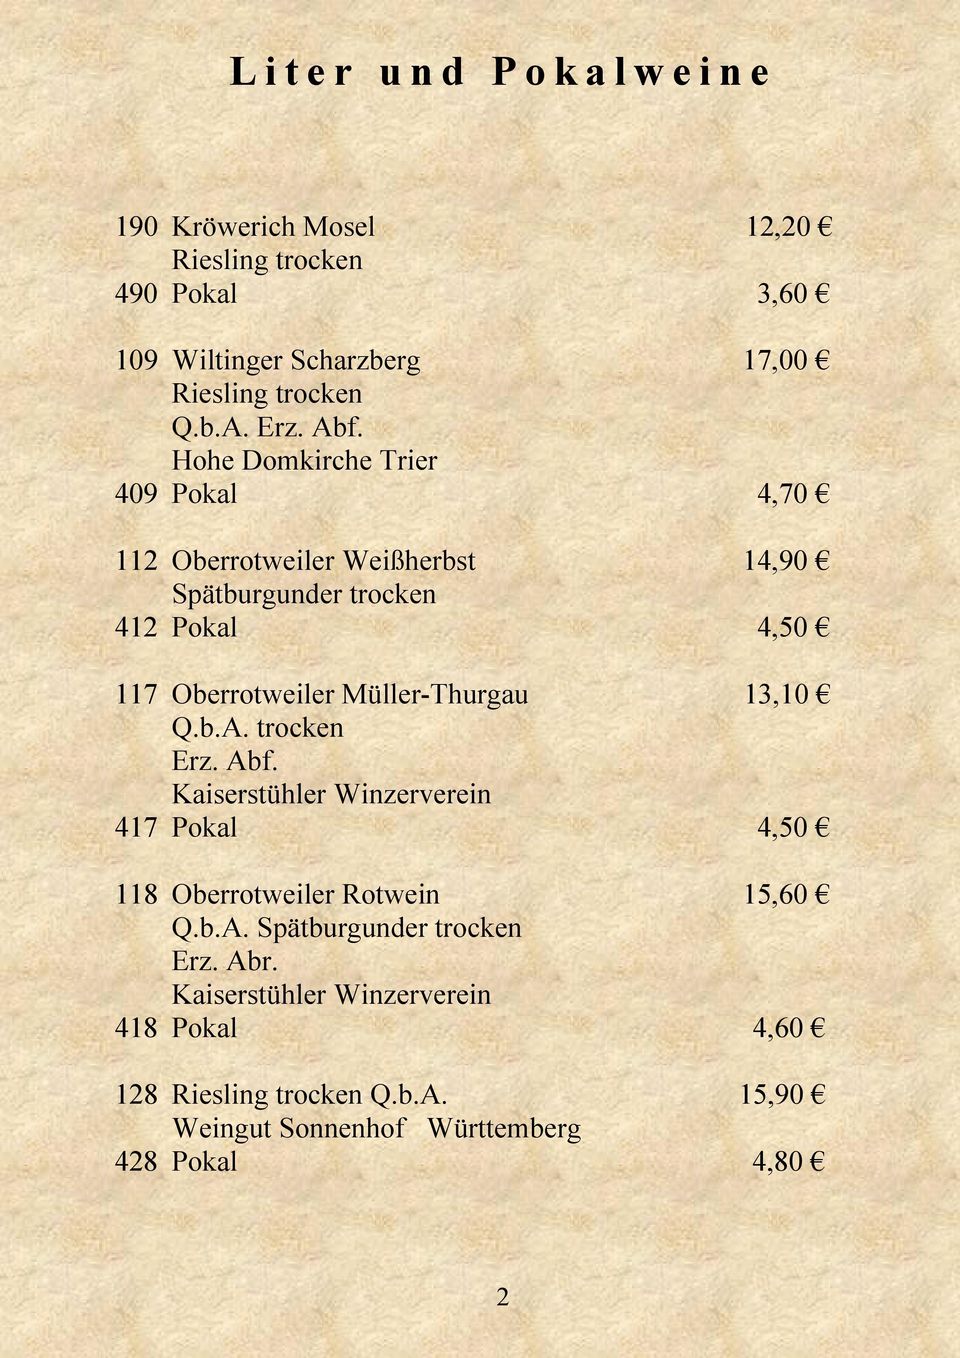 Müller-Thurgau 13,10 Q.b.A. trocken Erz. Abf. Kaiserstühler Winzerverein 417 Pokal 4,50 118 Oberrotweiler Rotwein 15,60 Q.b.A. Spätburgunder trocken Erz.